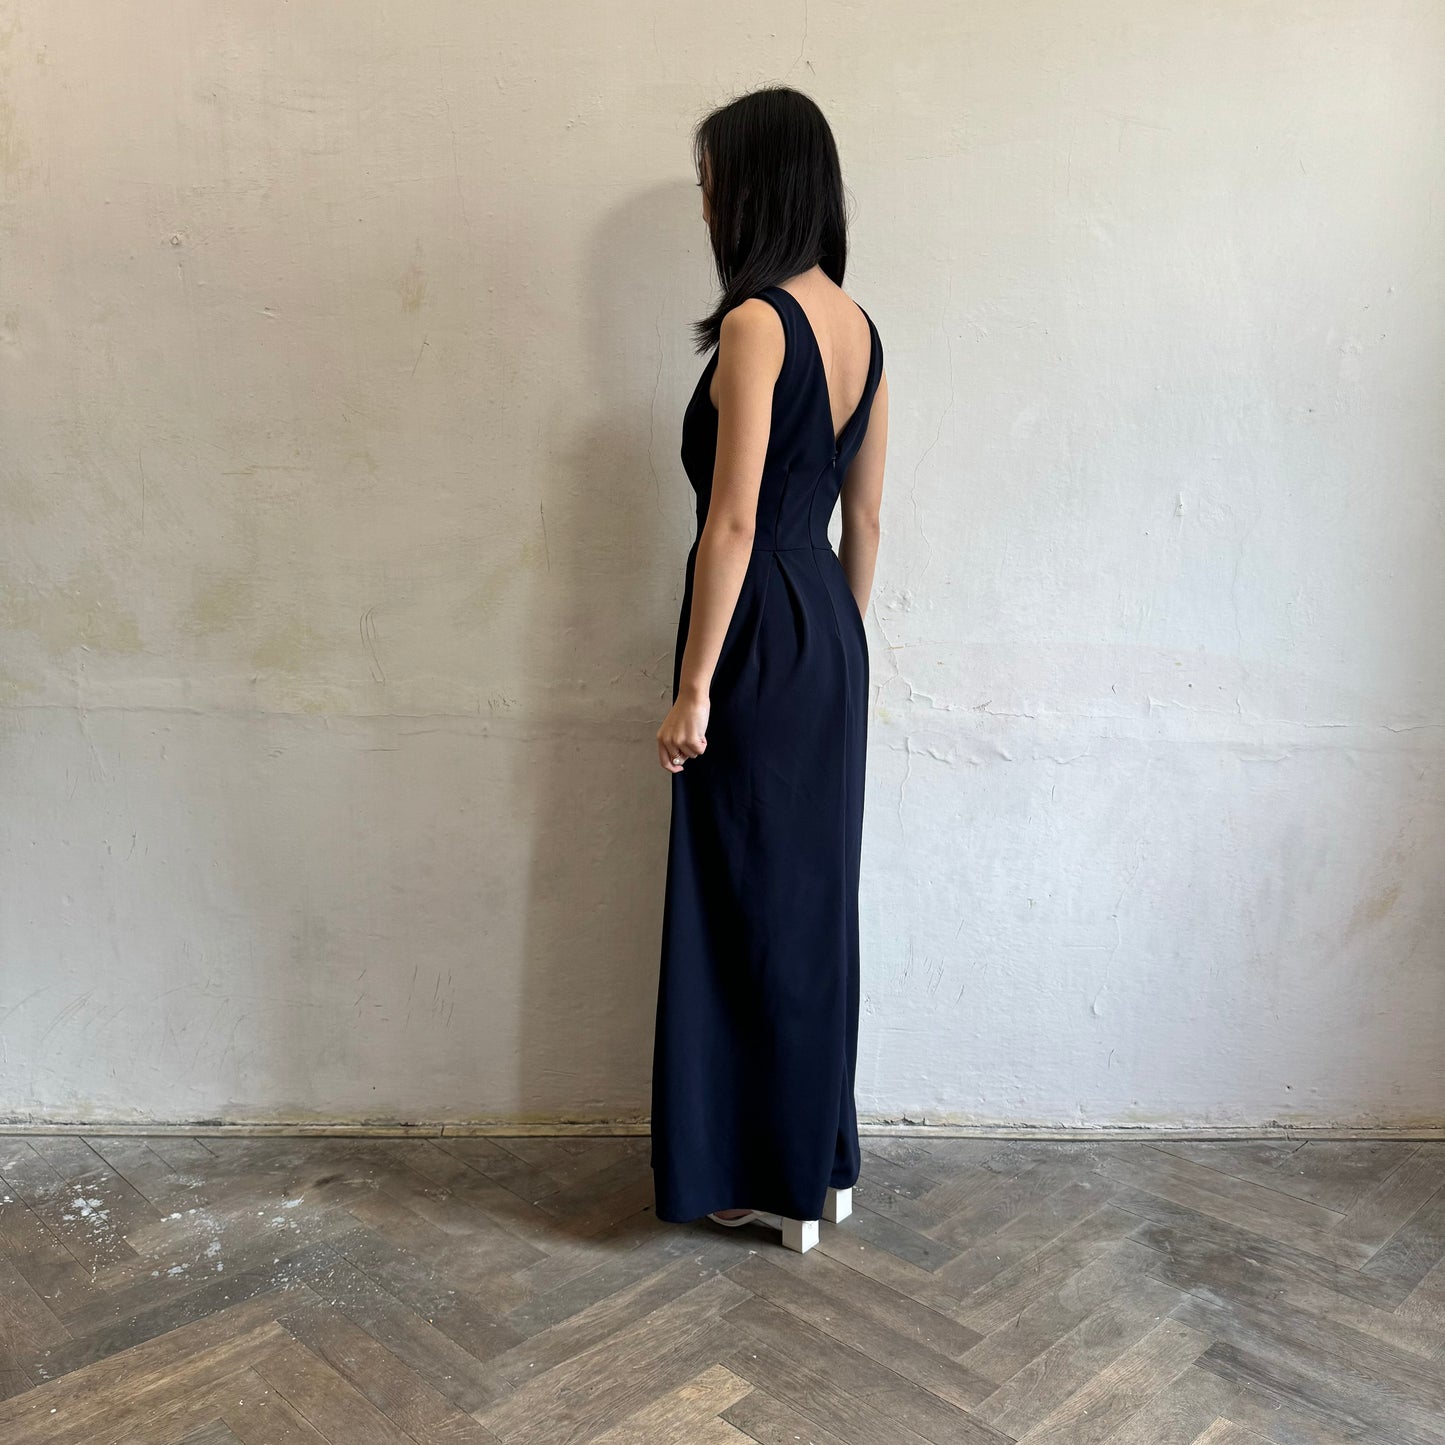 Modelka asijského původu pózující z boku oblečená v tmavě modrých společenských šatech s rozparkem